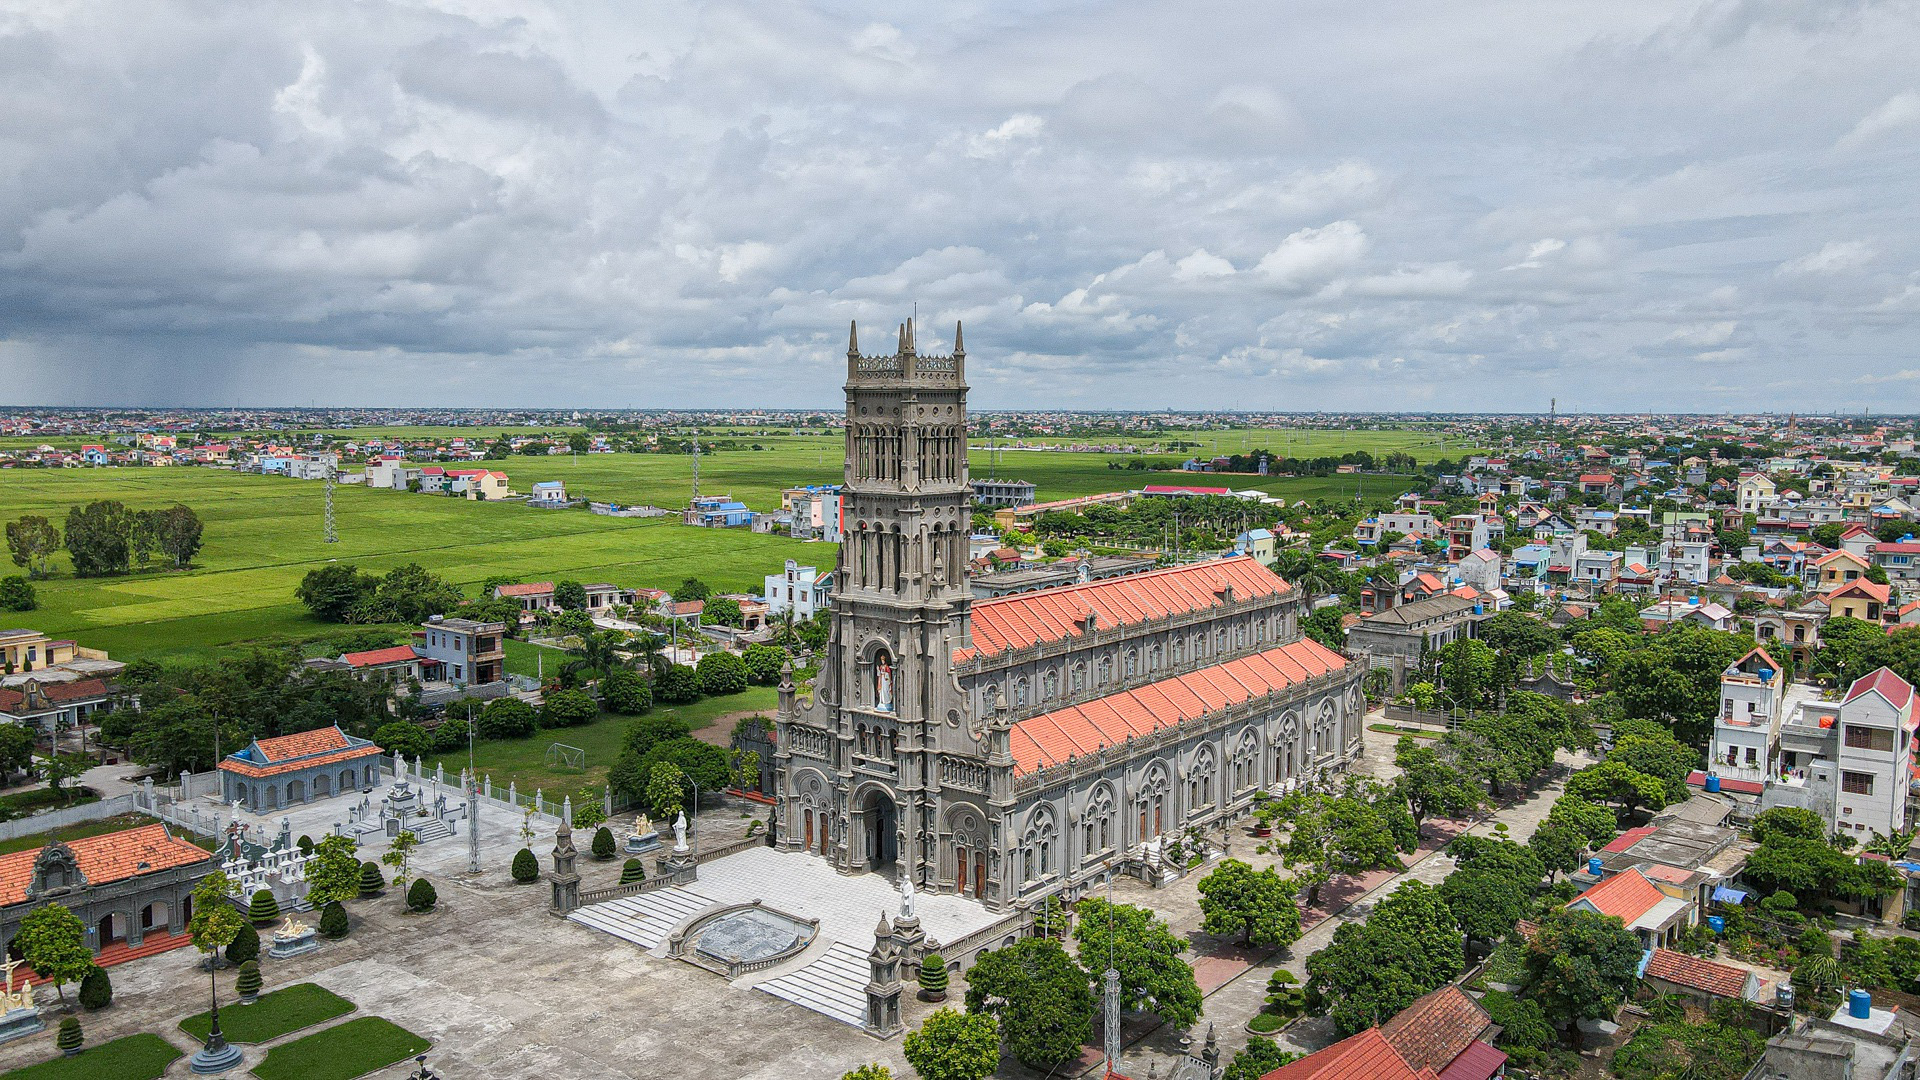 Đền Thánh Sa Châu Nam Định là một trong những công trình kiến trúc lịch sử nổi tiếng tại Việt Nam. Với kiến trúc đậm phong cách truyền thống và các tài liệu lưu giữ về lịch sử và văn hóa, nơi này là một điểm đến hấp dẫn cho du khách. Hãy để những hình ảnh này dẫn bạn đến Đền Thánh Sa Châu Nam Định.